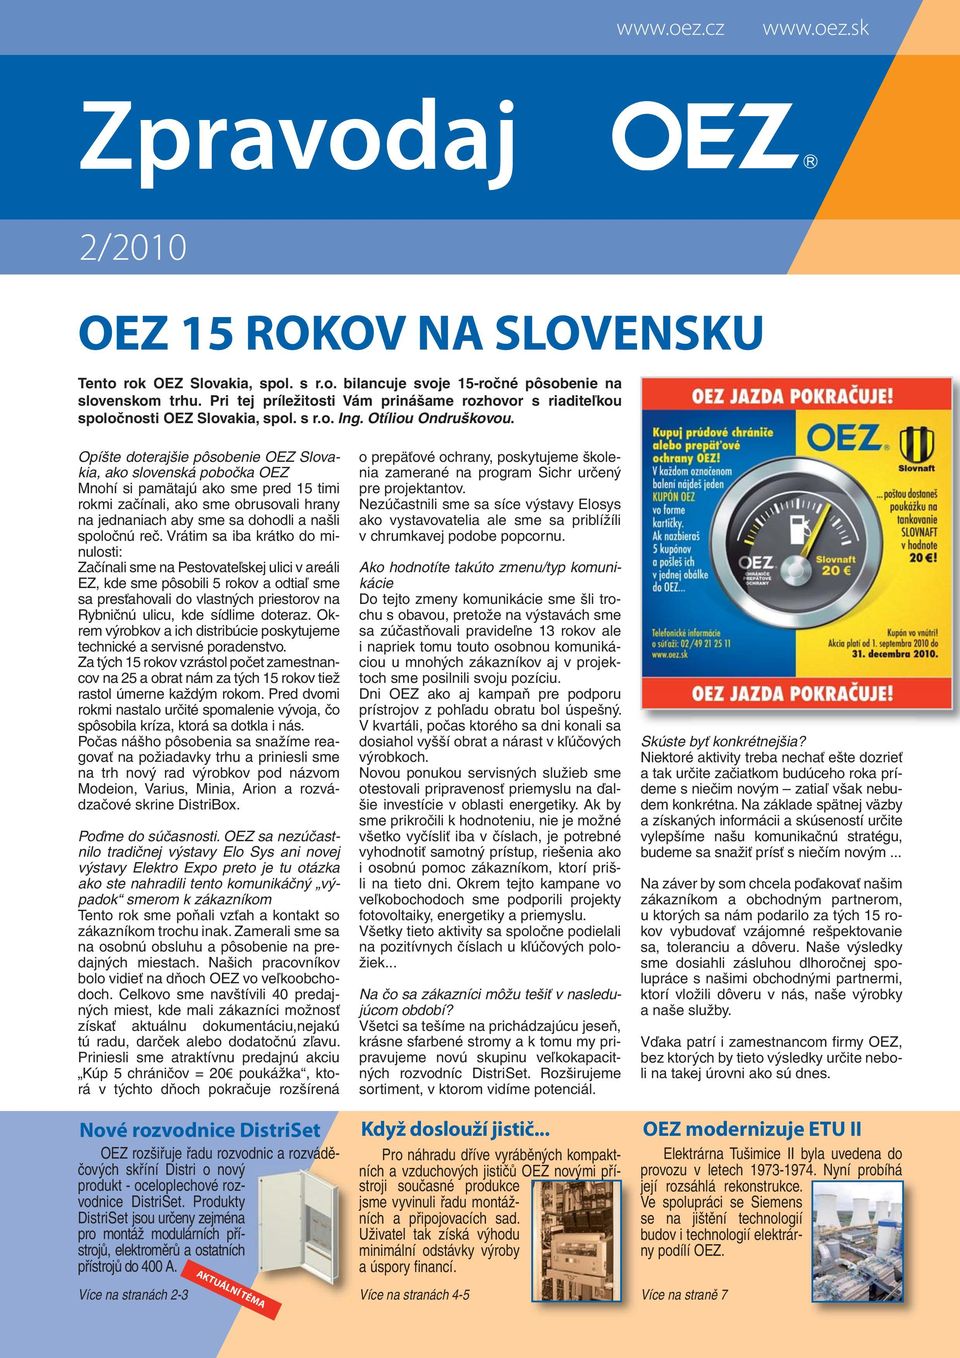 OEZ 15 ROKOV NA SLOVENSKU - PDF Stažení zdarma